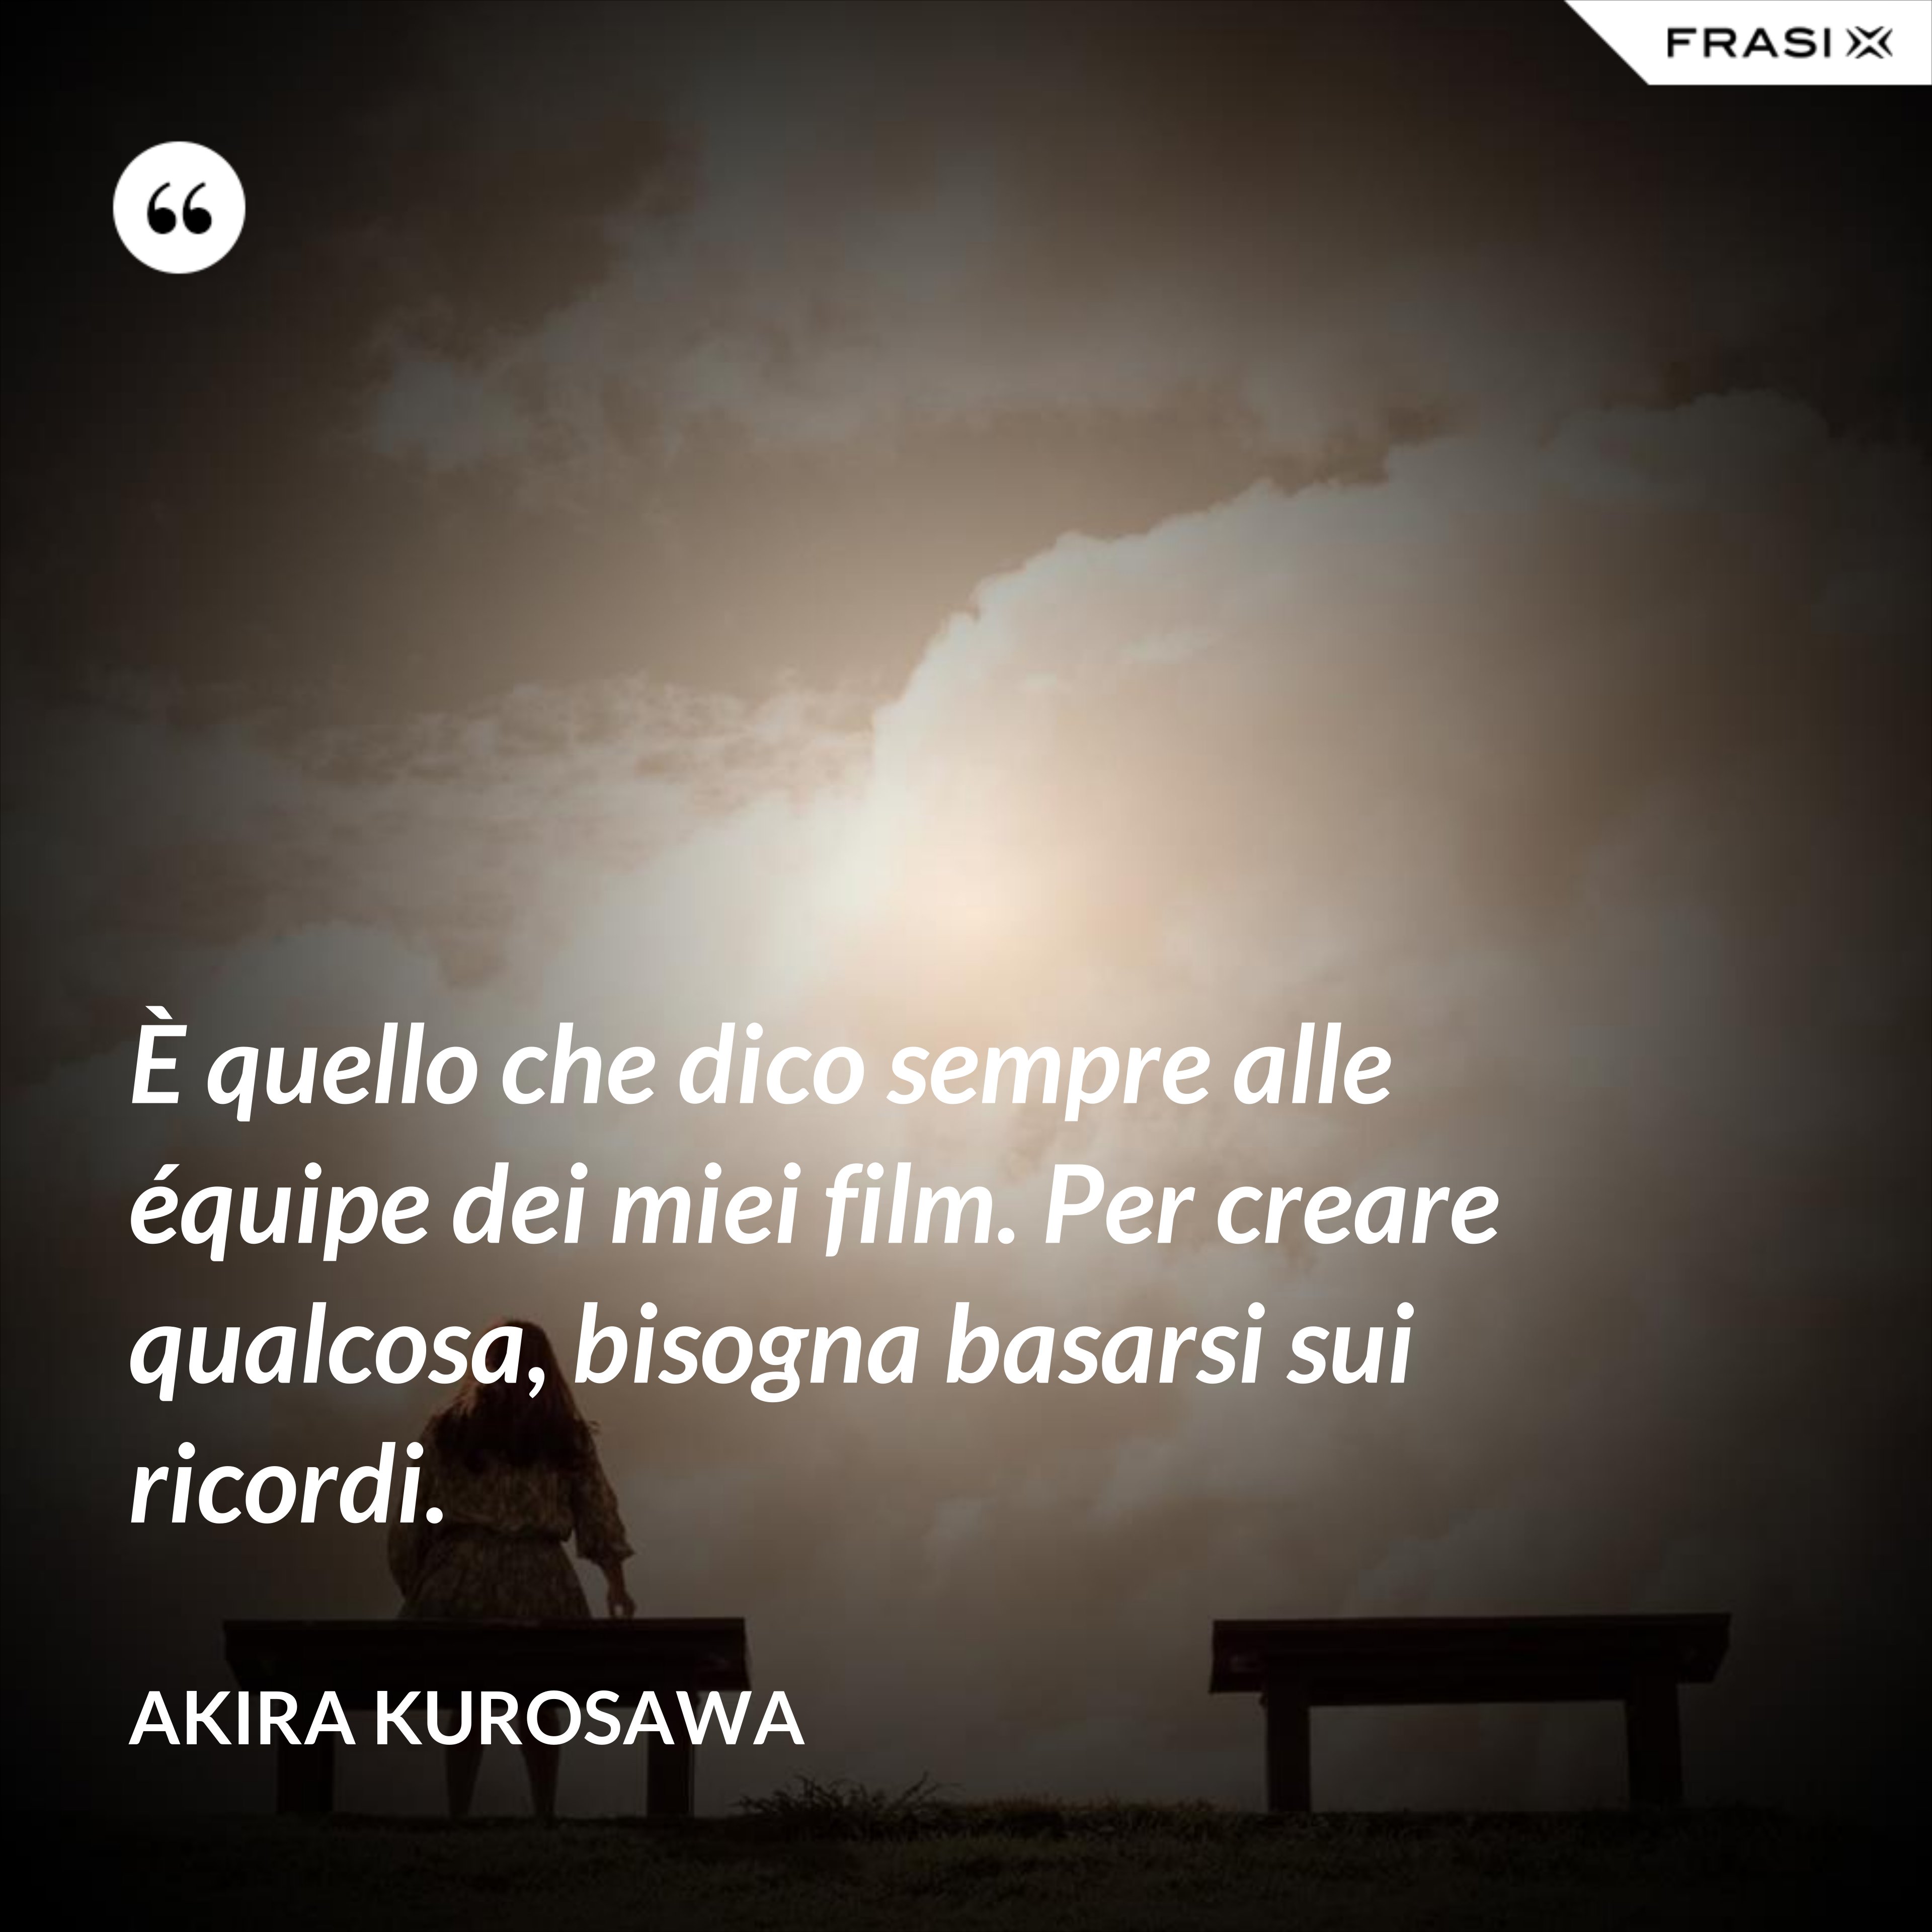 È quello che dico sempre alle équipe dei miei film. Per creare qualcosa, bisogna basarsi sui ricordi. - Akira Kurosawa